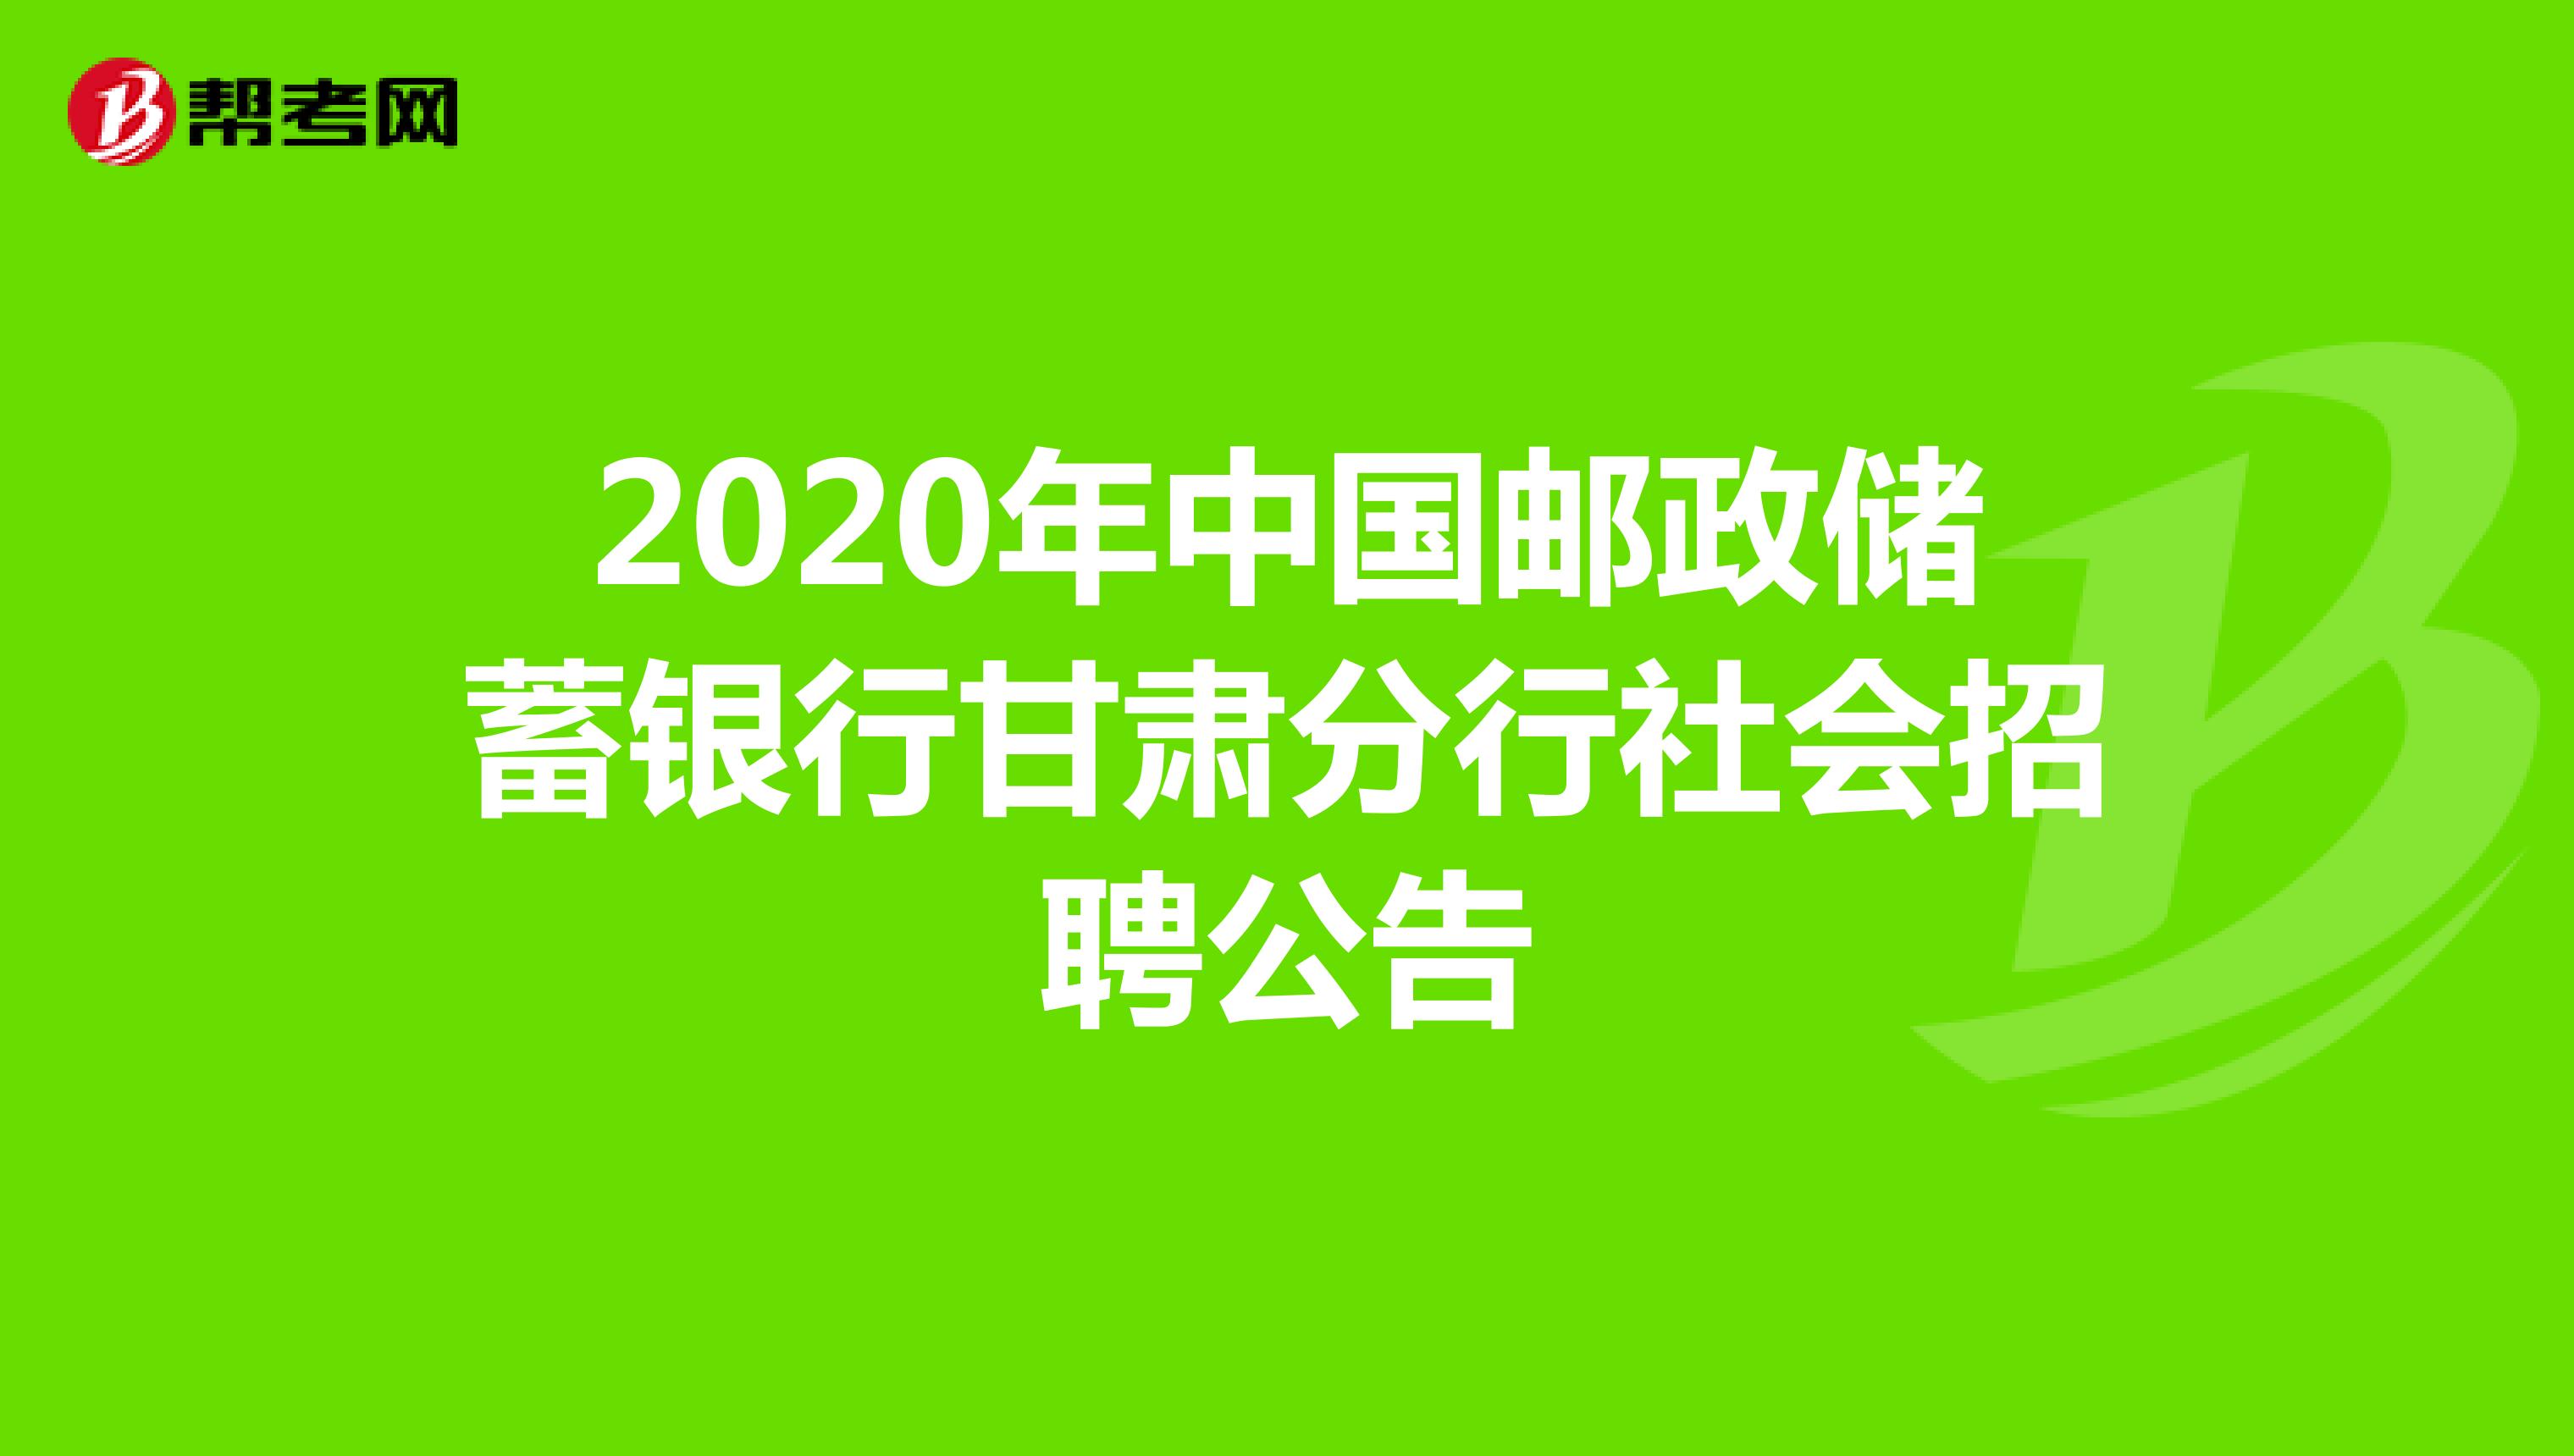 2020年中国邮政储蓄银行甘肃分行社会招聘公告 